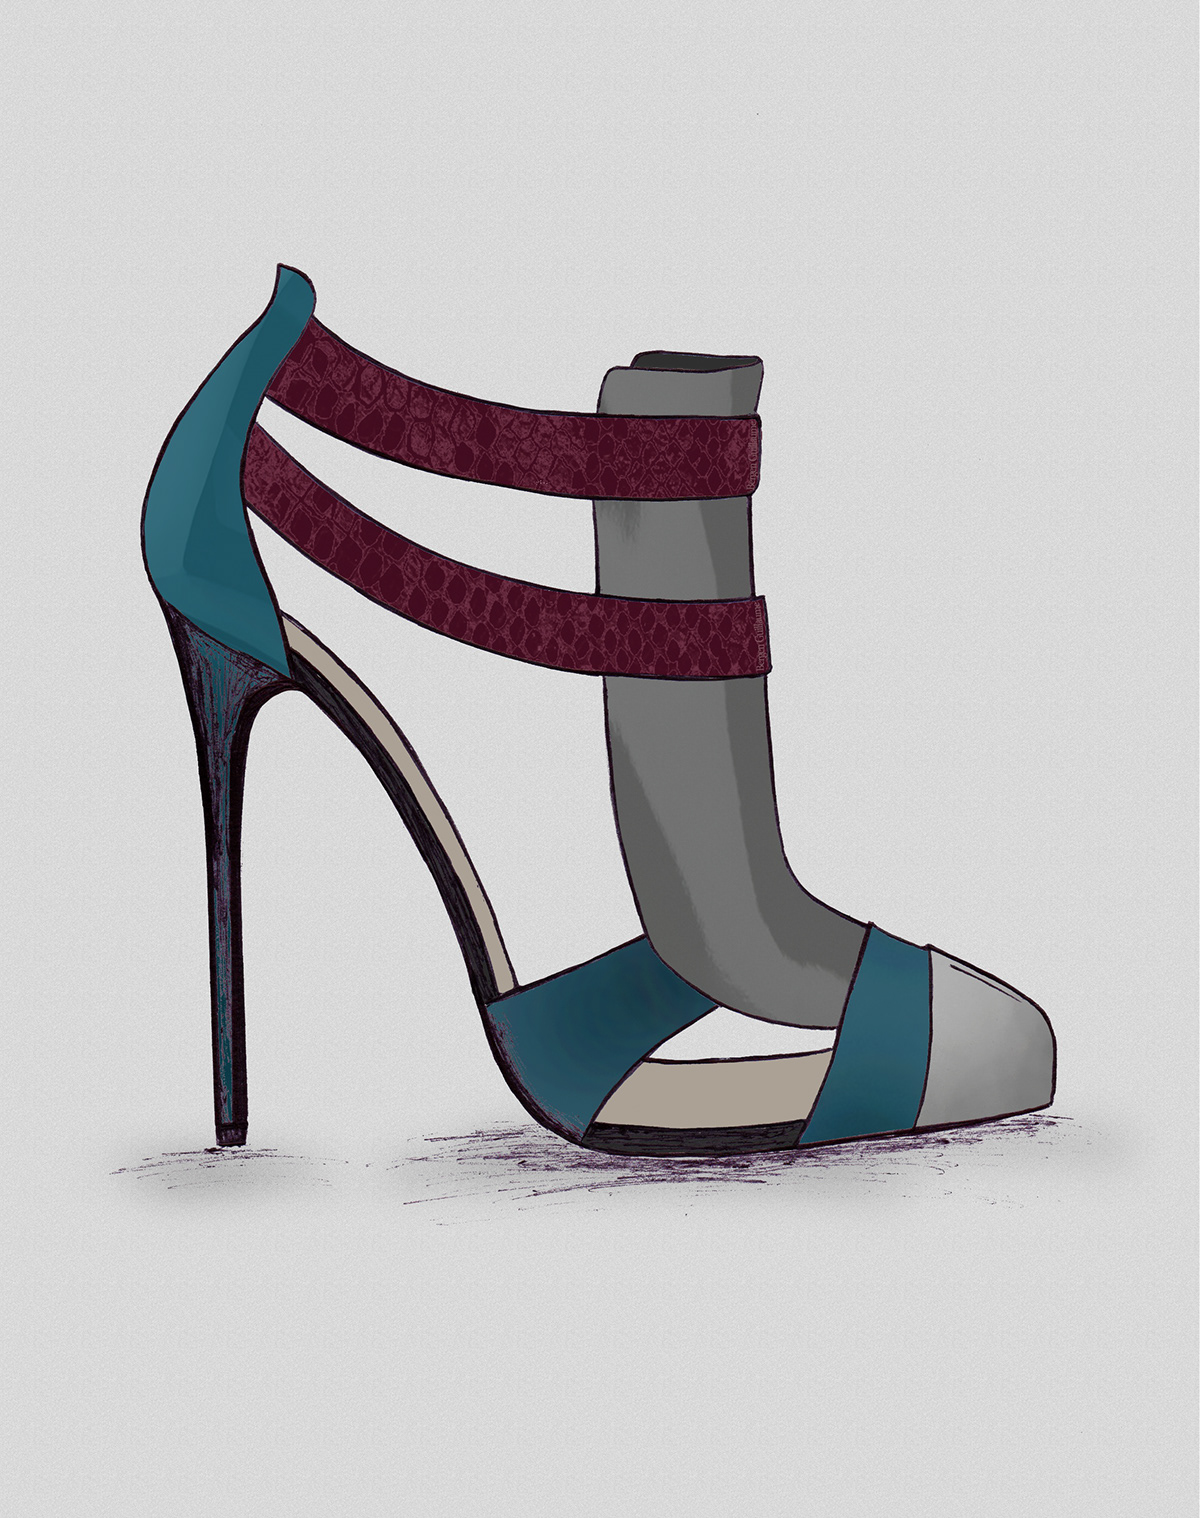 #Fashion #Heel #HeelDesign #Pump fashionillustration #guillaumebergen